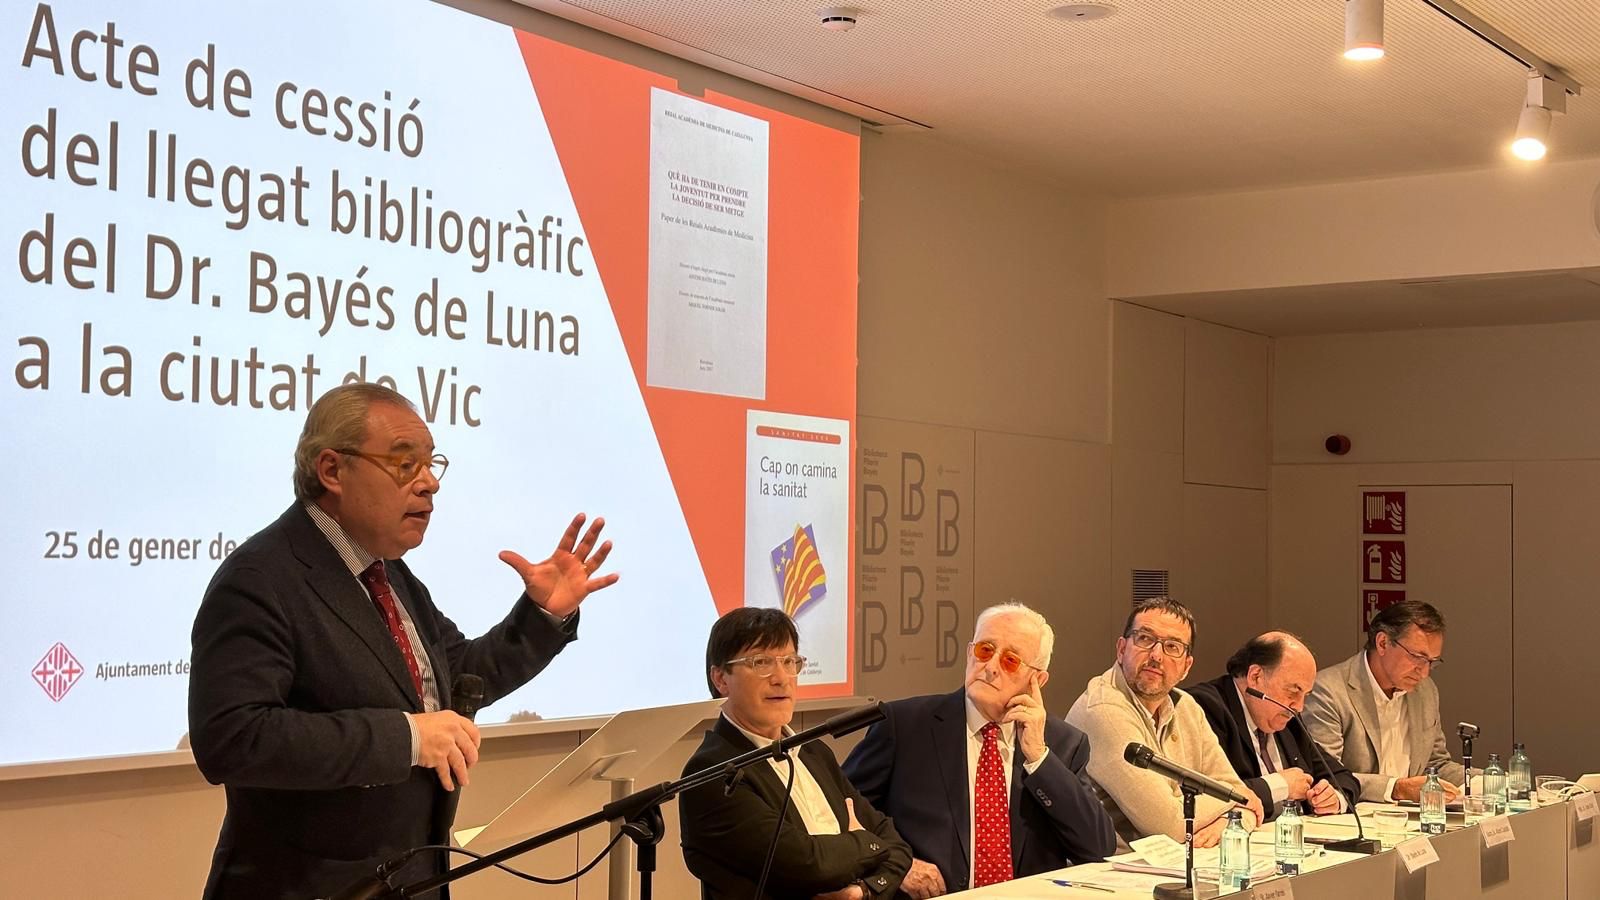 Intervención de Josep Arimany en la cesión del fondo bibliográfico de Antoni Bayés